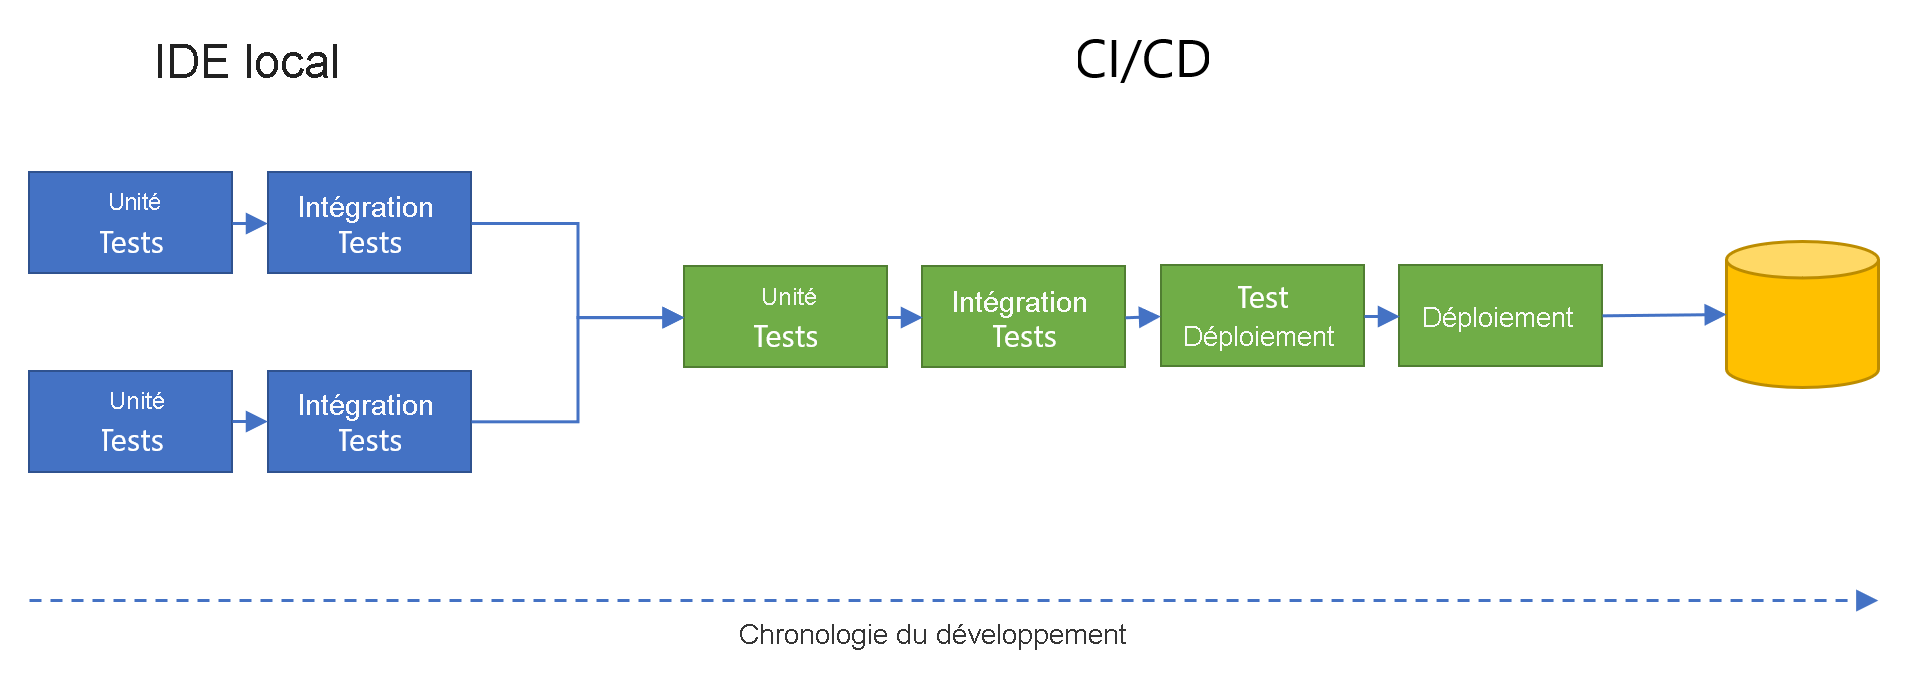 Diagramme montrant des tests unitaires et des tests d'intégration parallèles dans des IDE locaux, fusionnant dans un flux de développement CI/CD avec des tests unitaires, des tests d'intégration, un déploiement de tests et un déploiement final.